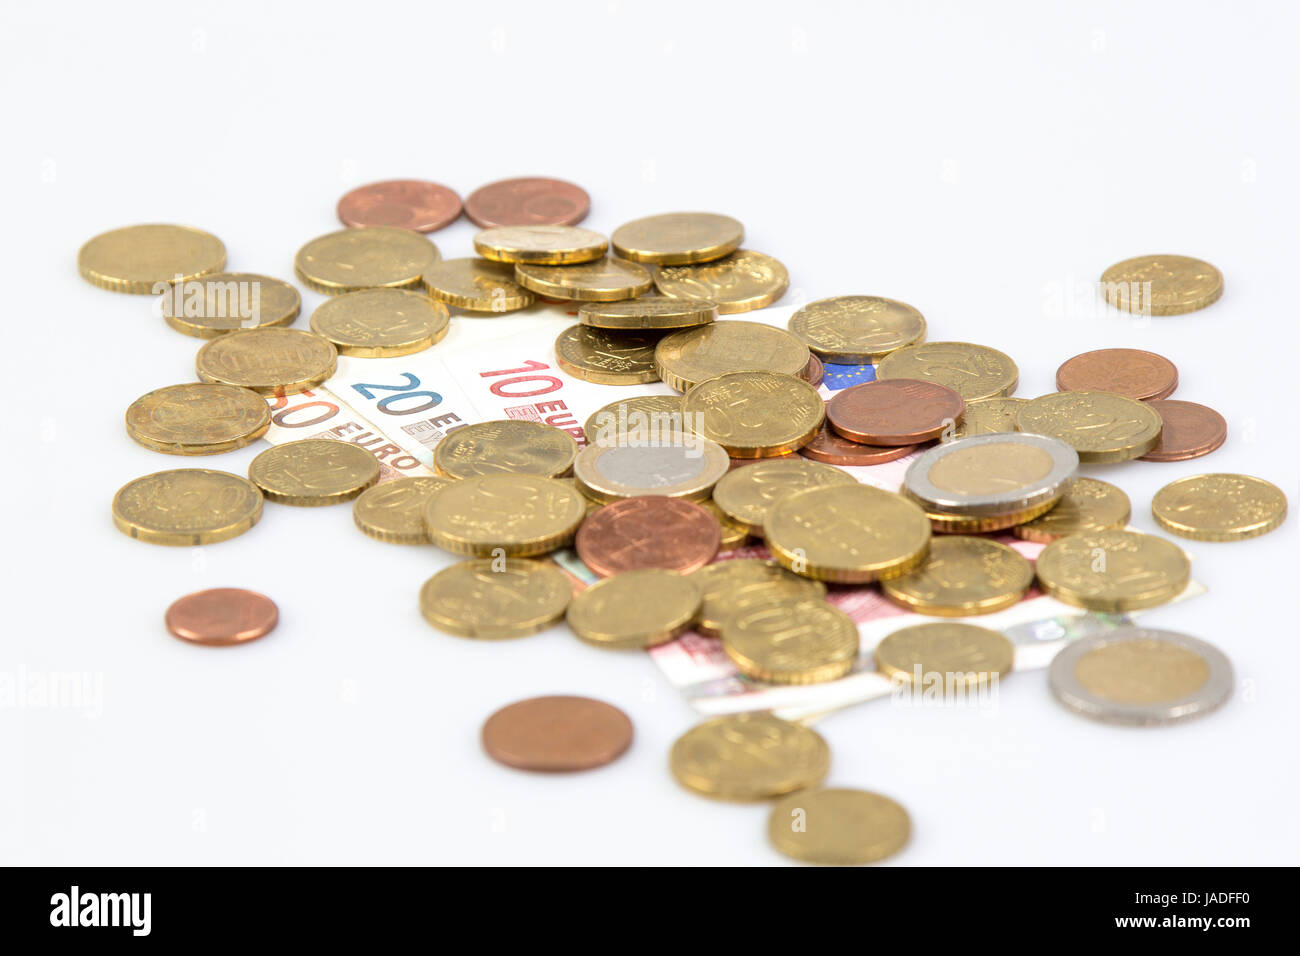 euromünzen und scheine freigestellt auf weißem hintergrund - Euro coins and some notes isolated on white background Stock Photo